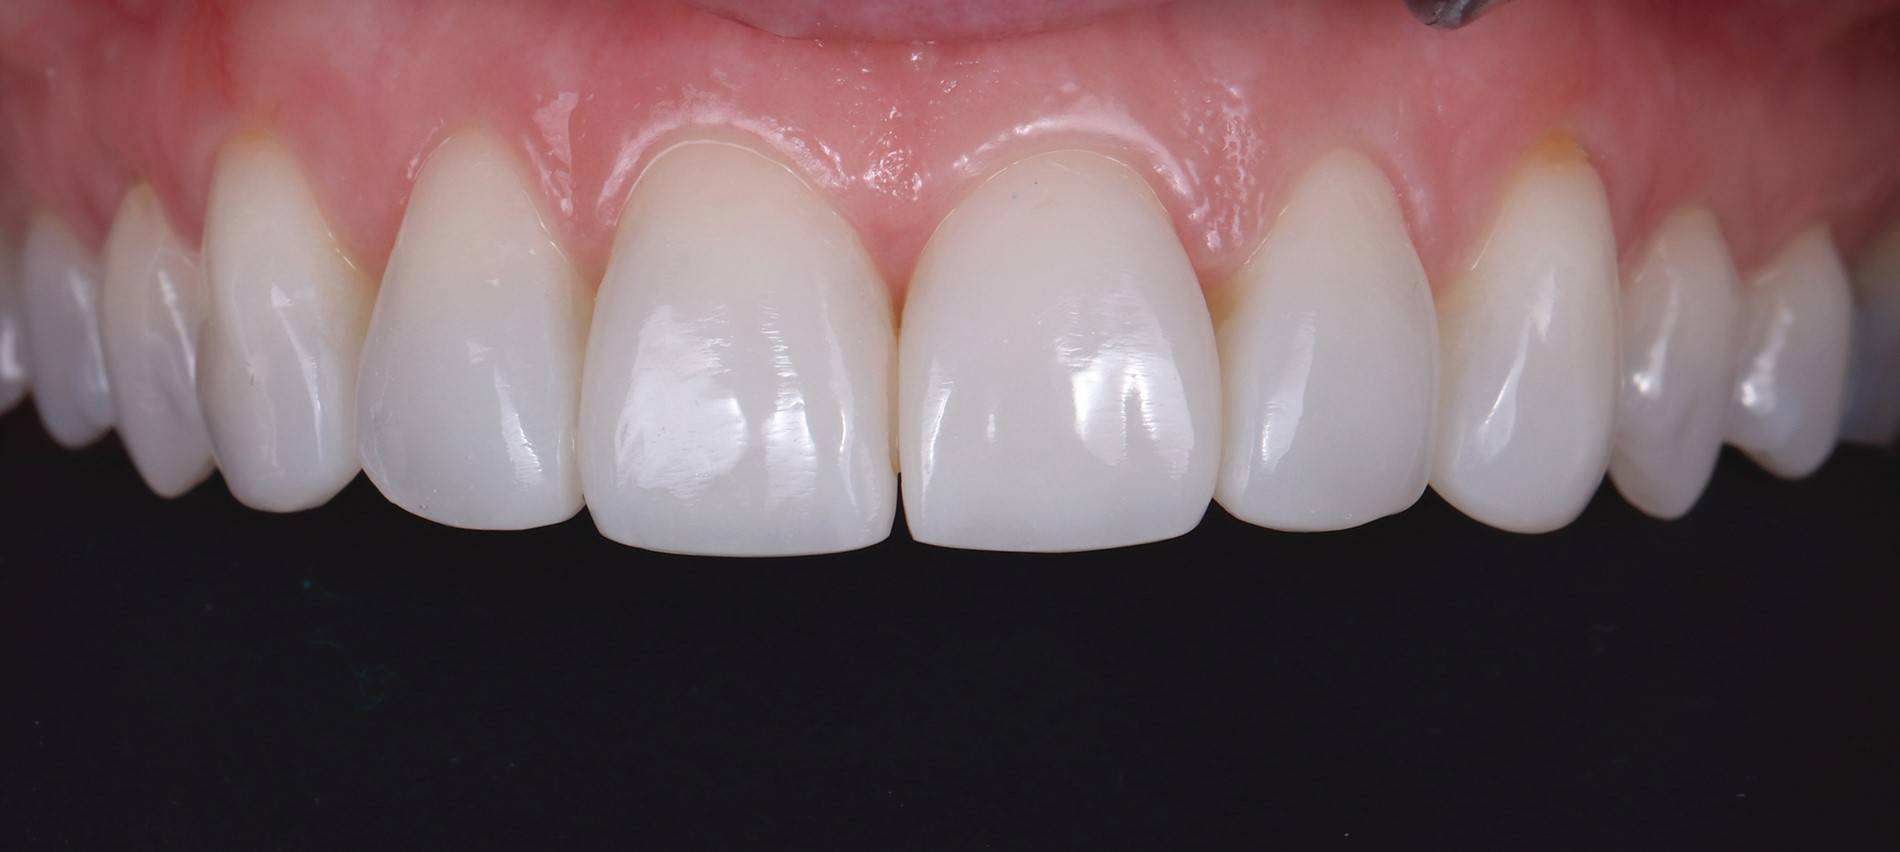 Upper teeth after procedure